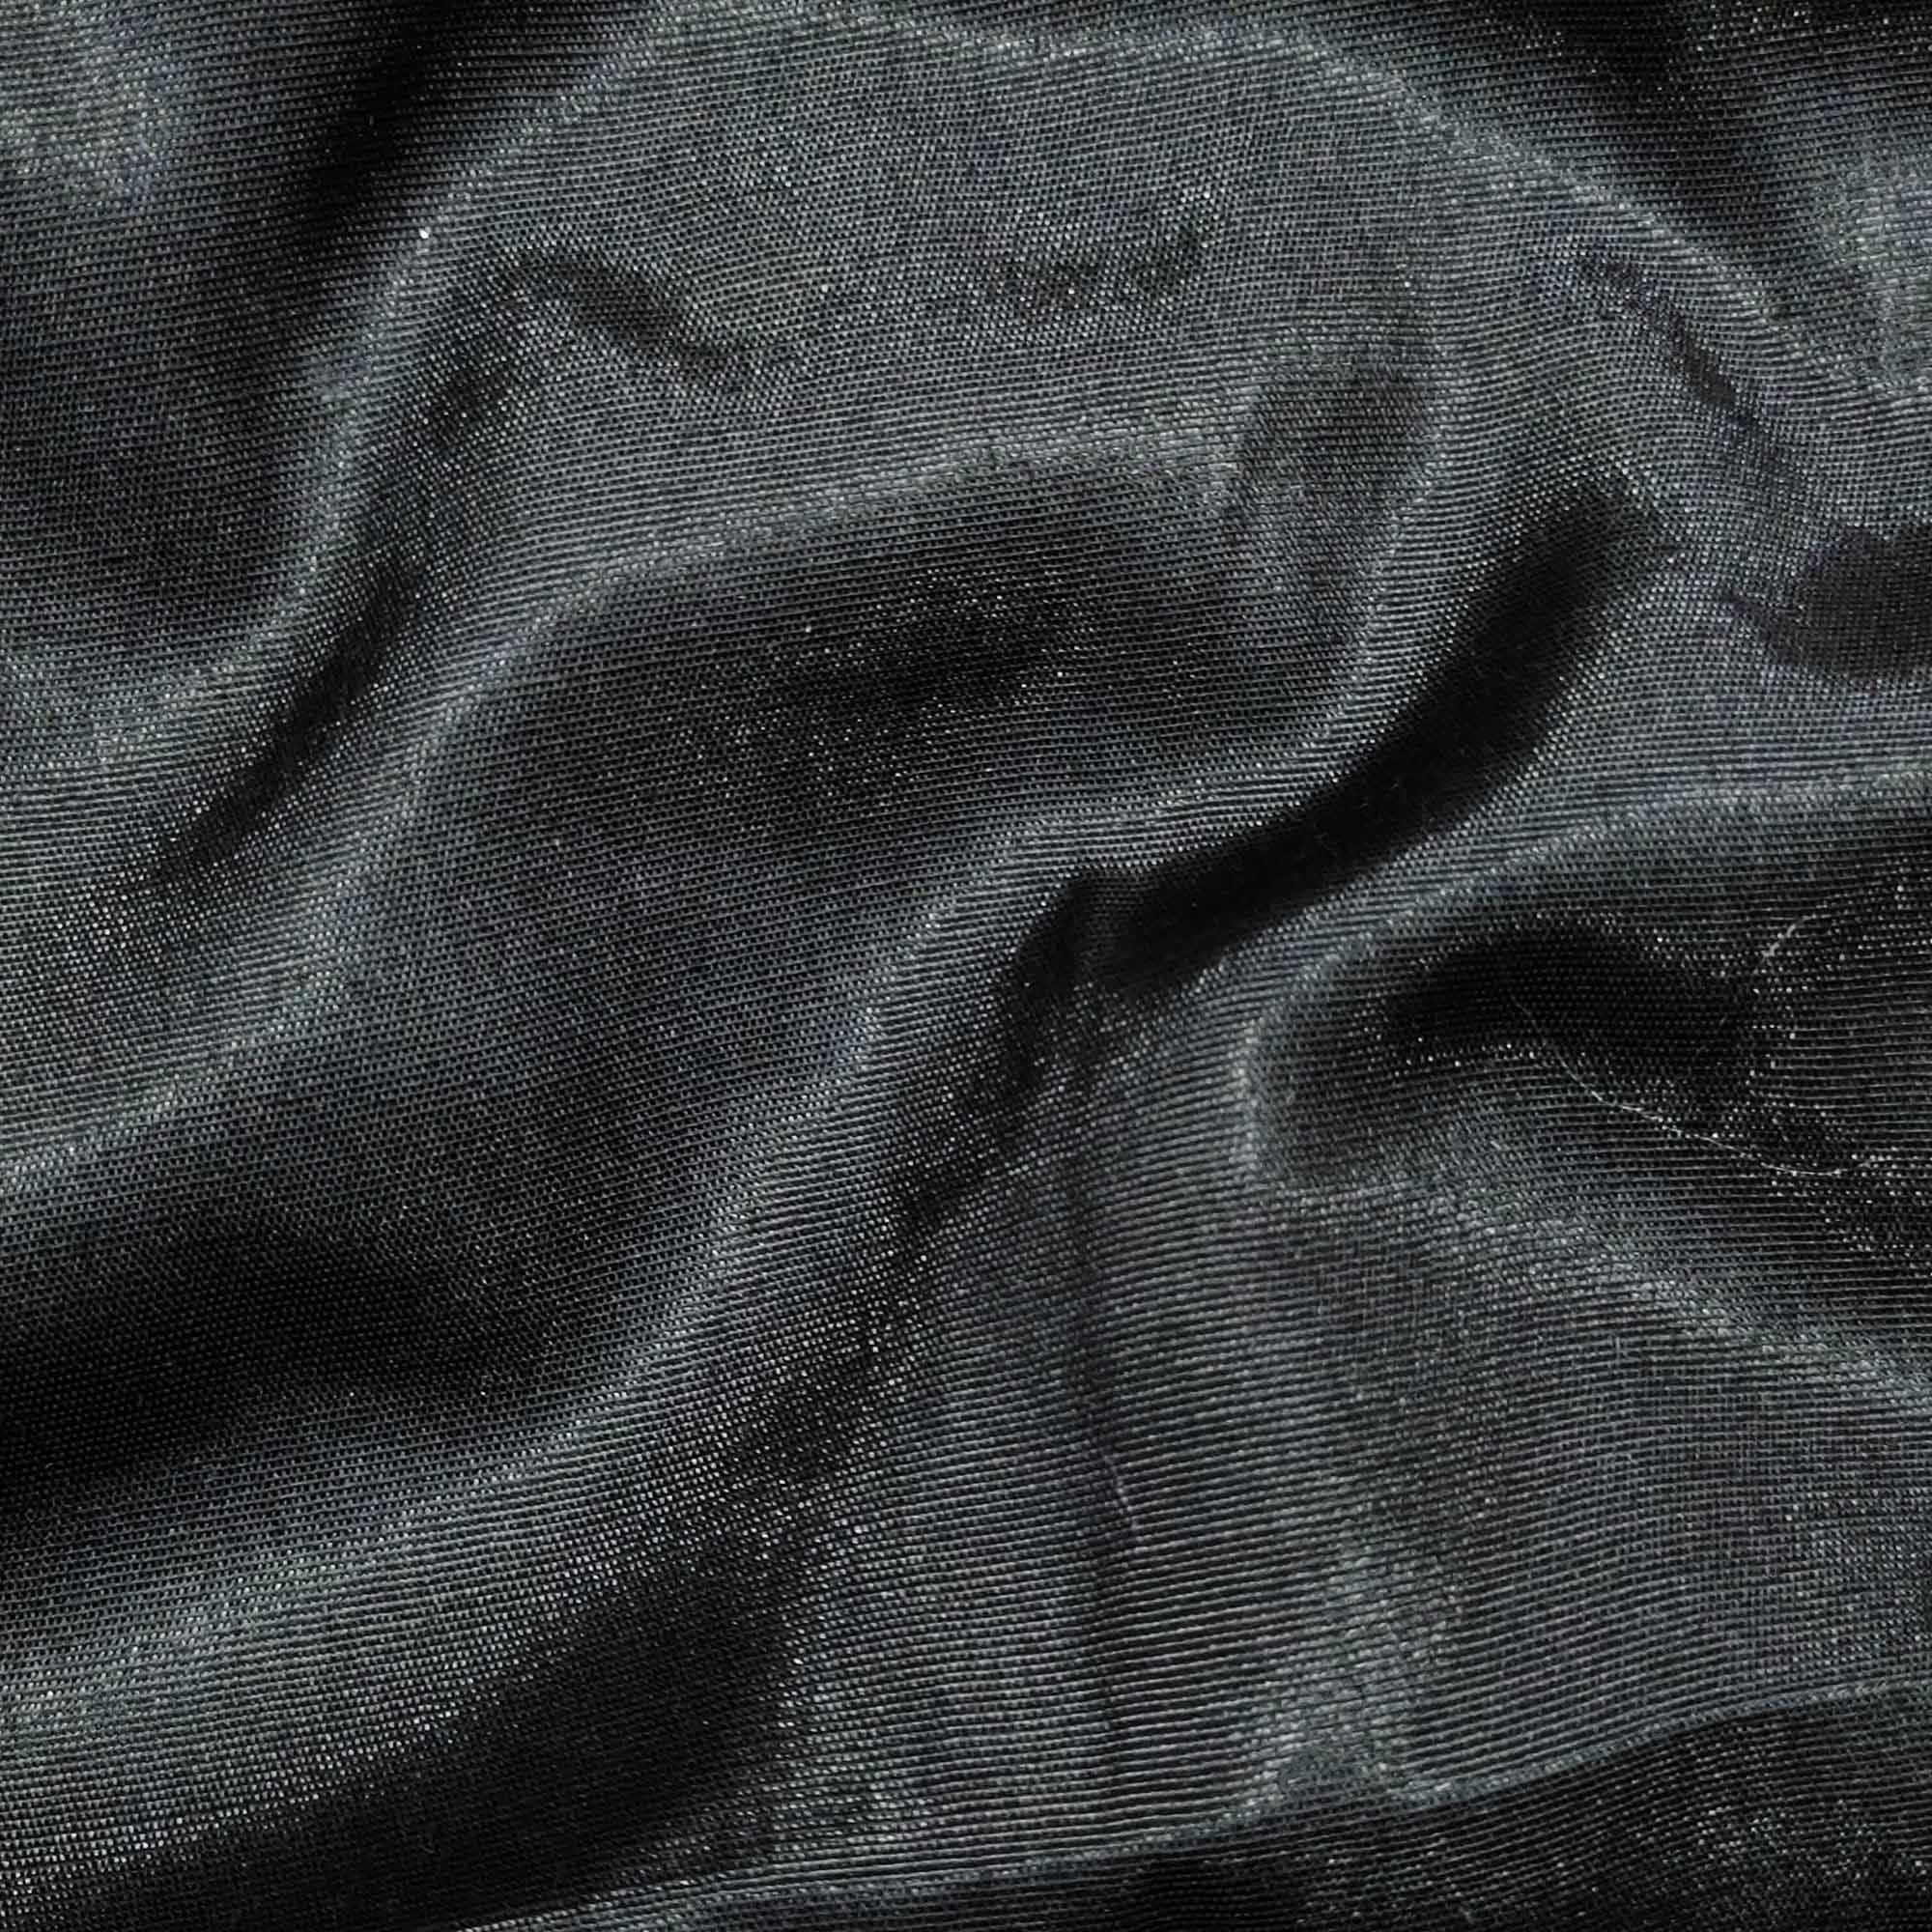 Black Floral Printed Organza Dress Material